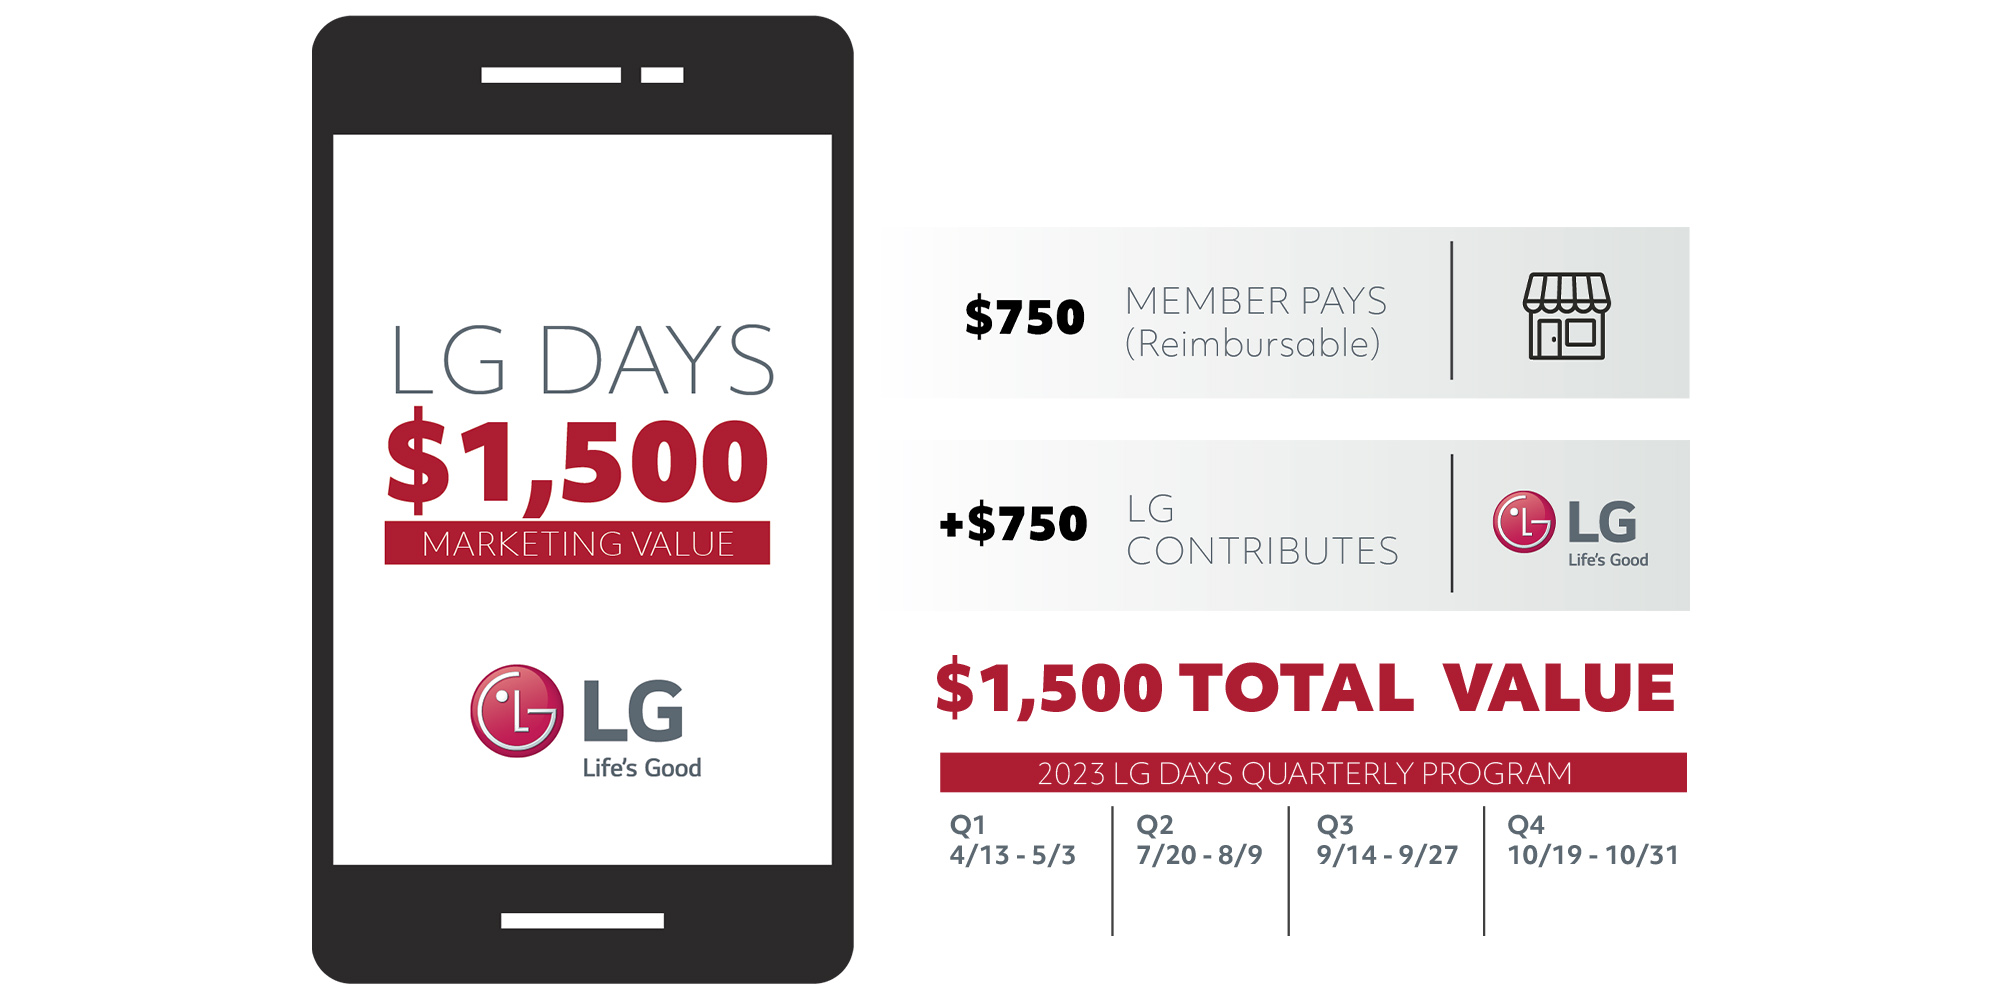 LG-Days-Marketing-Value_v5-lrg